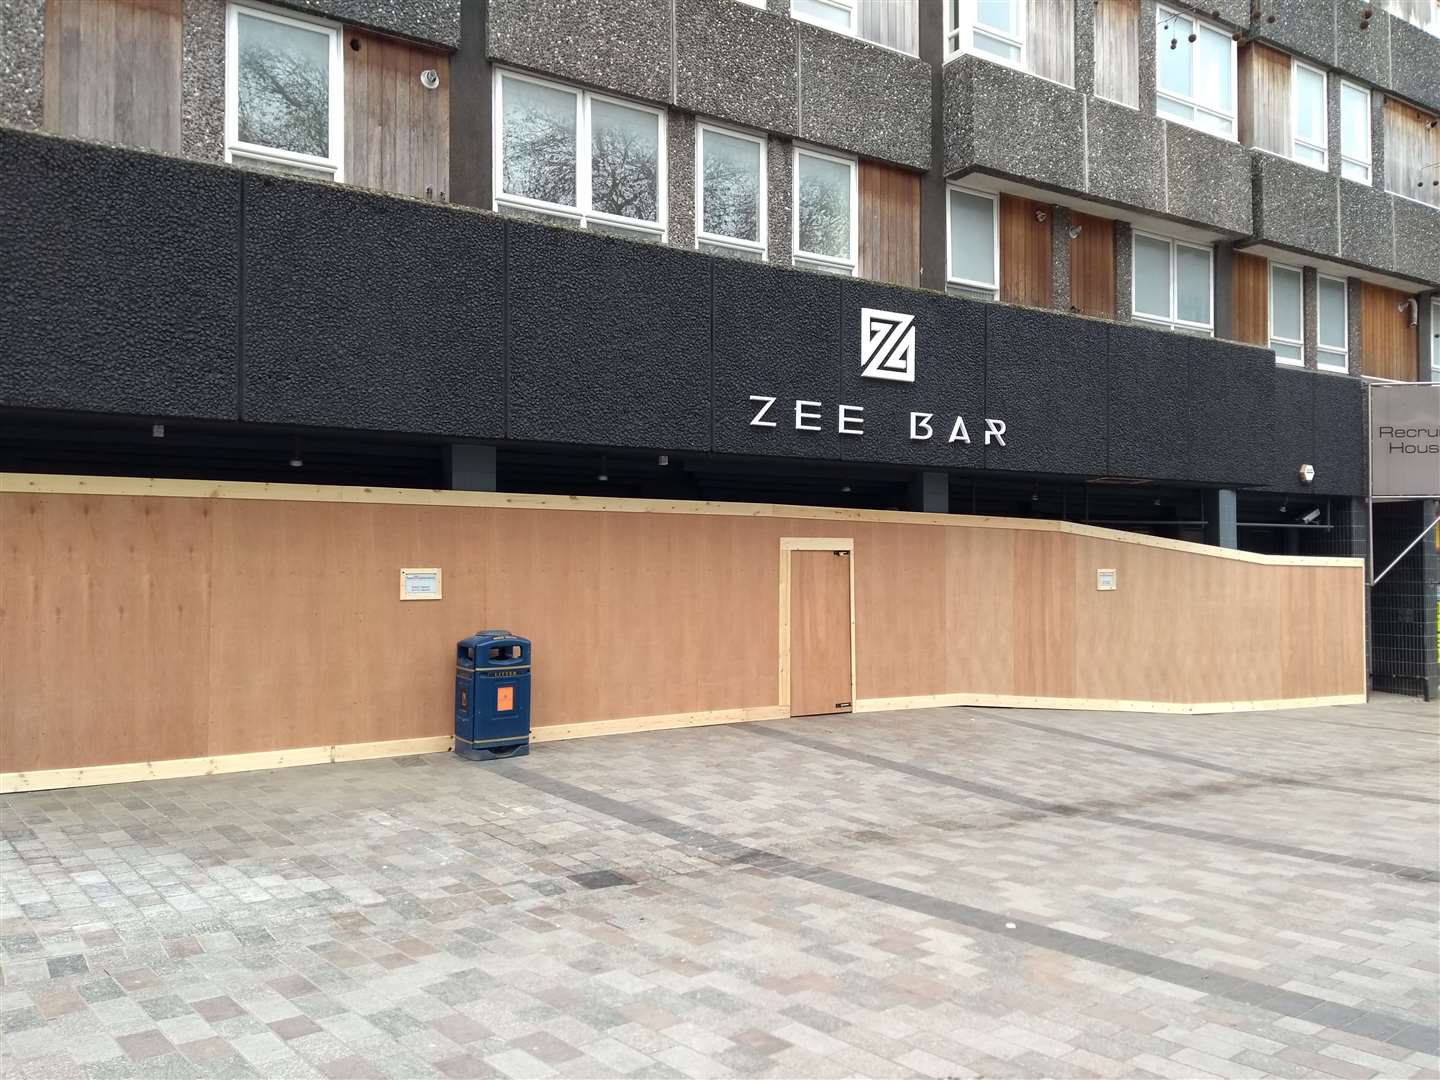 Zee Bar closed in 2018